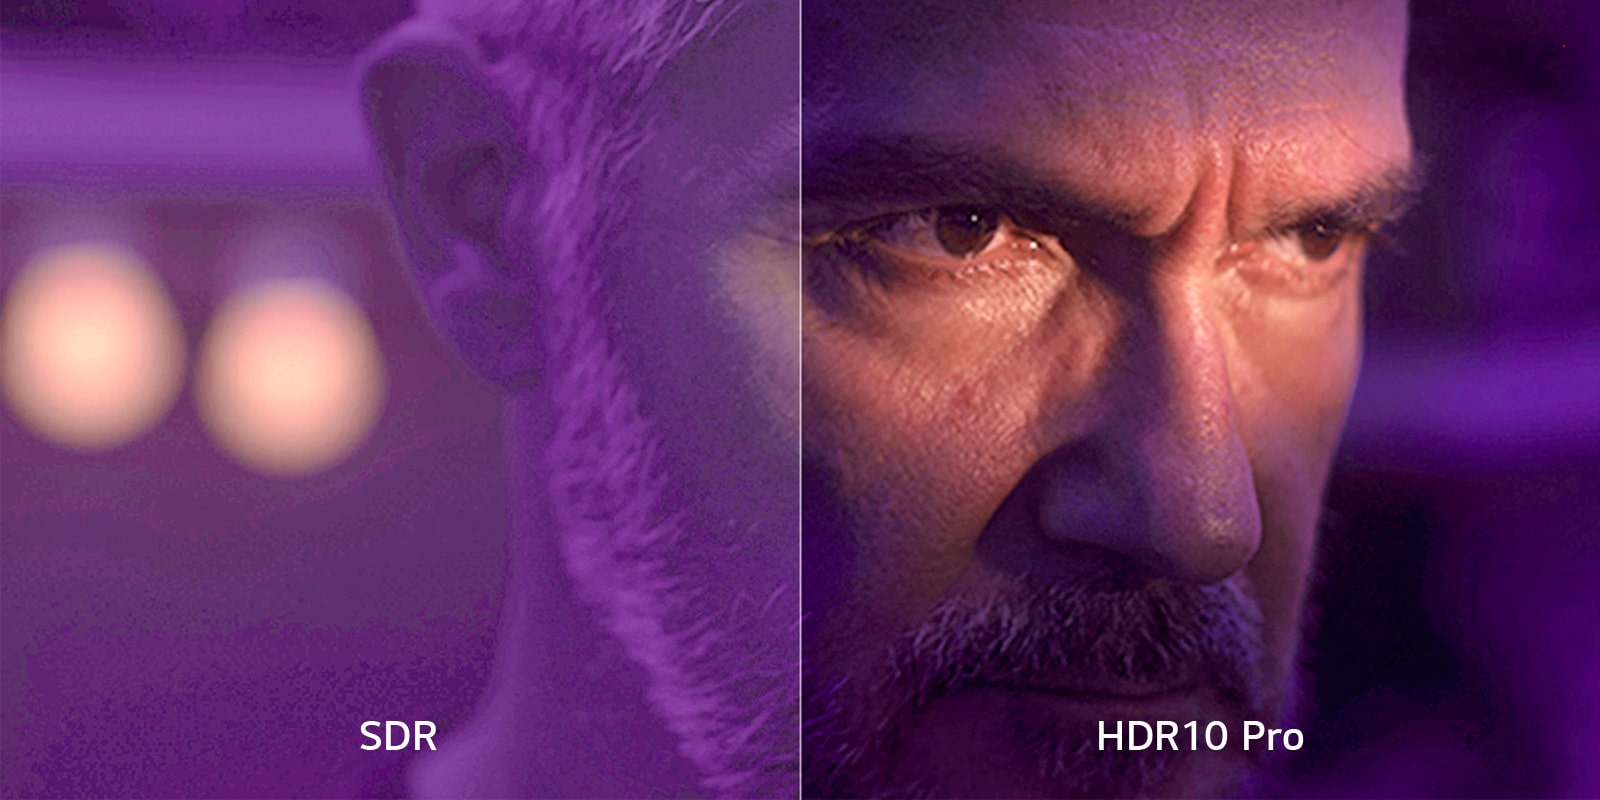 Hình ảnh cận cảnh chia đôi màn hình của khuôn mặt một người đàn ông được hiển thị trong căn phòng tối, nhuốm màu tím. Ở bên trái, "SDR" được hiển thị và hình ảnh bị mờ. Ở bên phải, "HDR10 Pro" được hiển thị và hình ảnh rõ ràng và sắc nét.